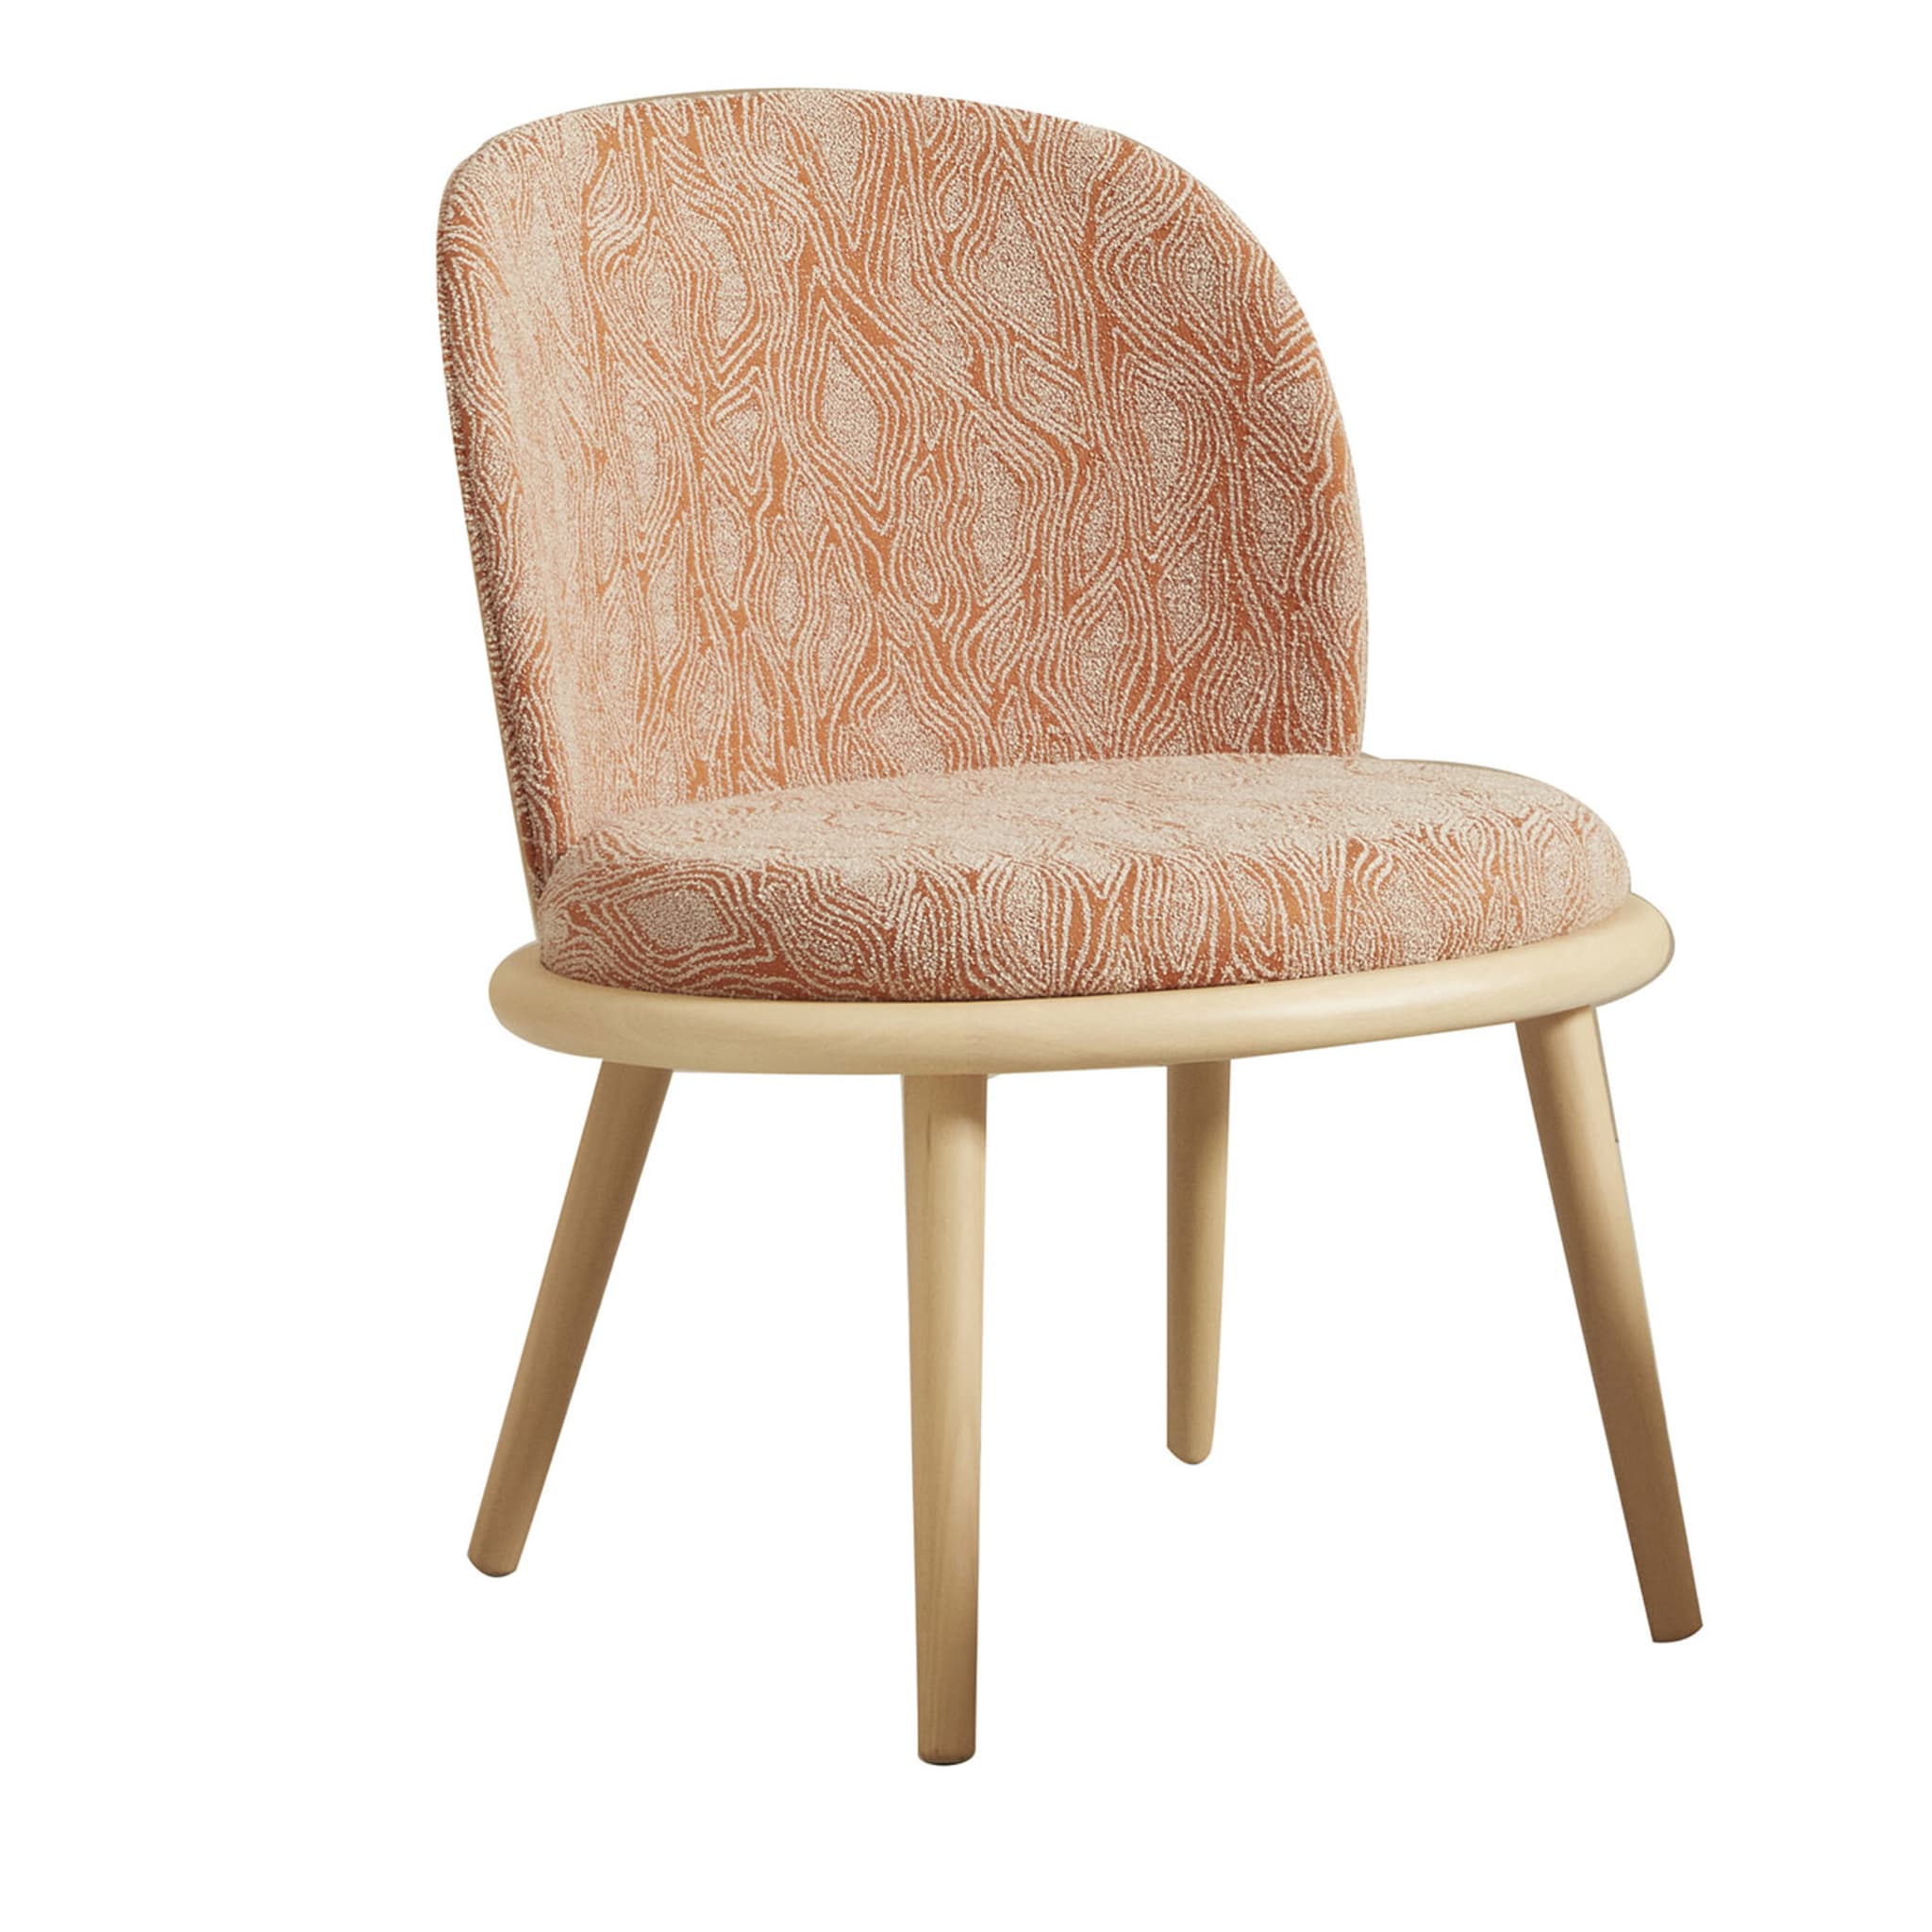 Veretta 927 Lounge Chair a fantasia di Cristina Celestino - Vista principale